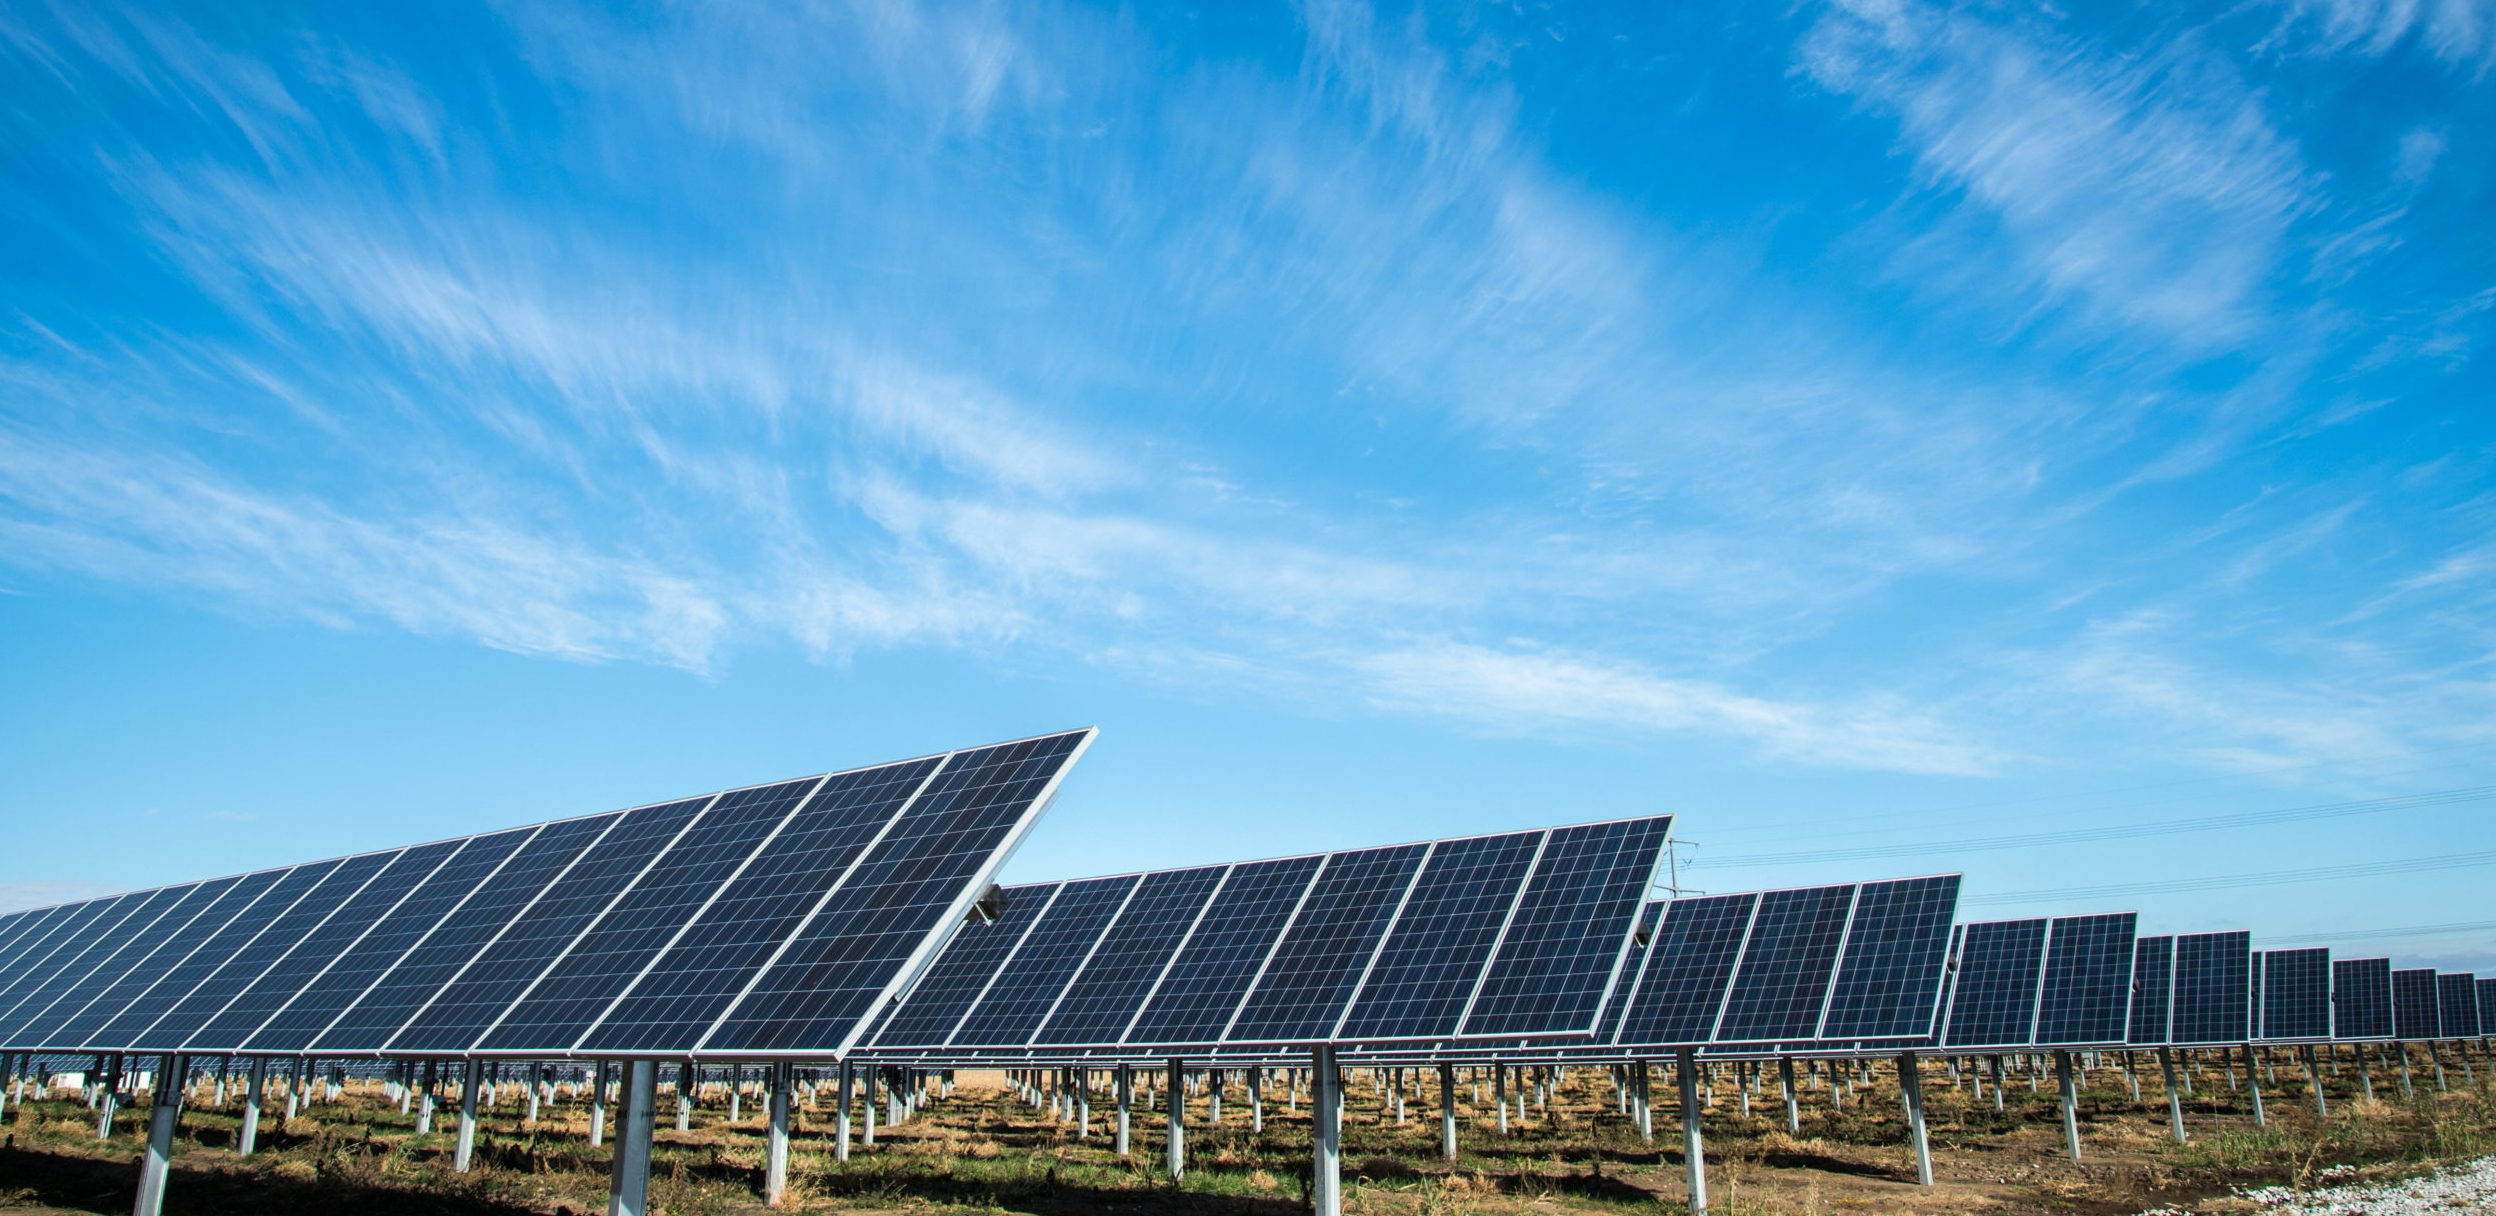 Türkiye’nin güneş enerjisinde kurulu gücü yaklaşık 8 bin megavata ulaştı